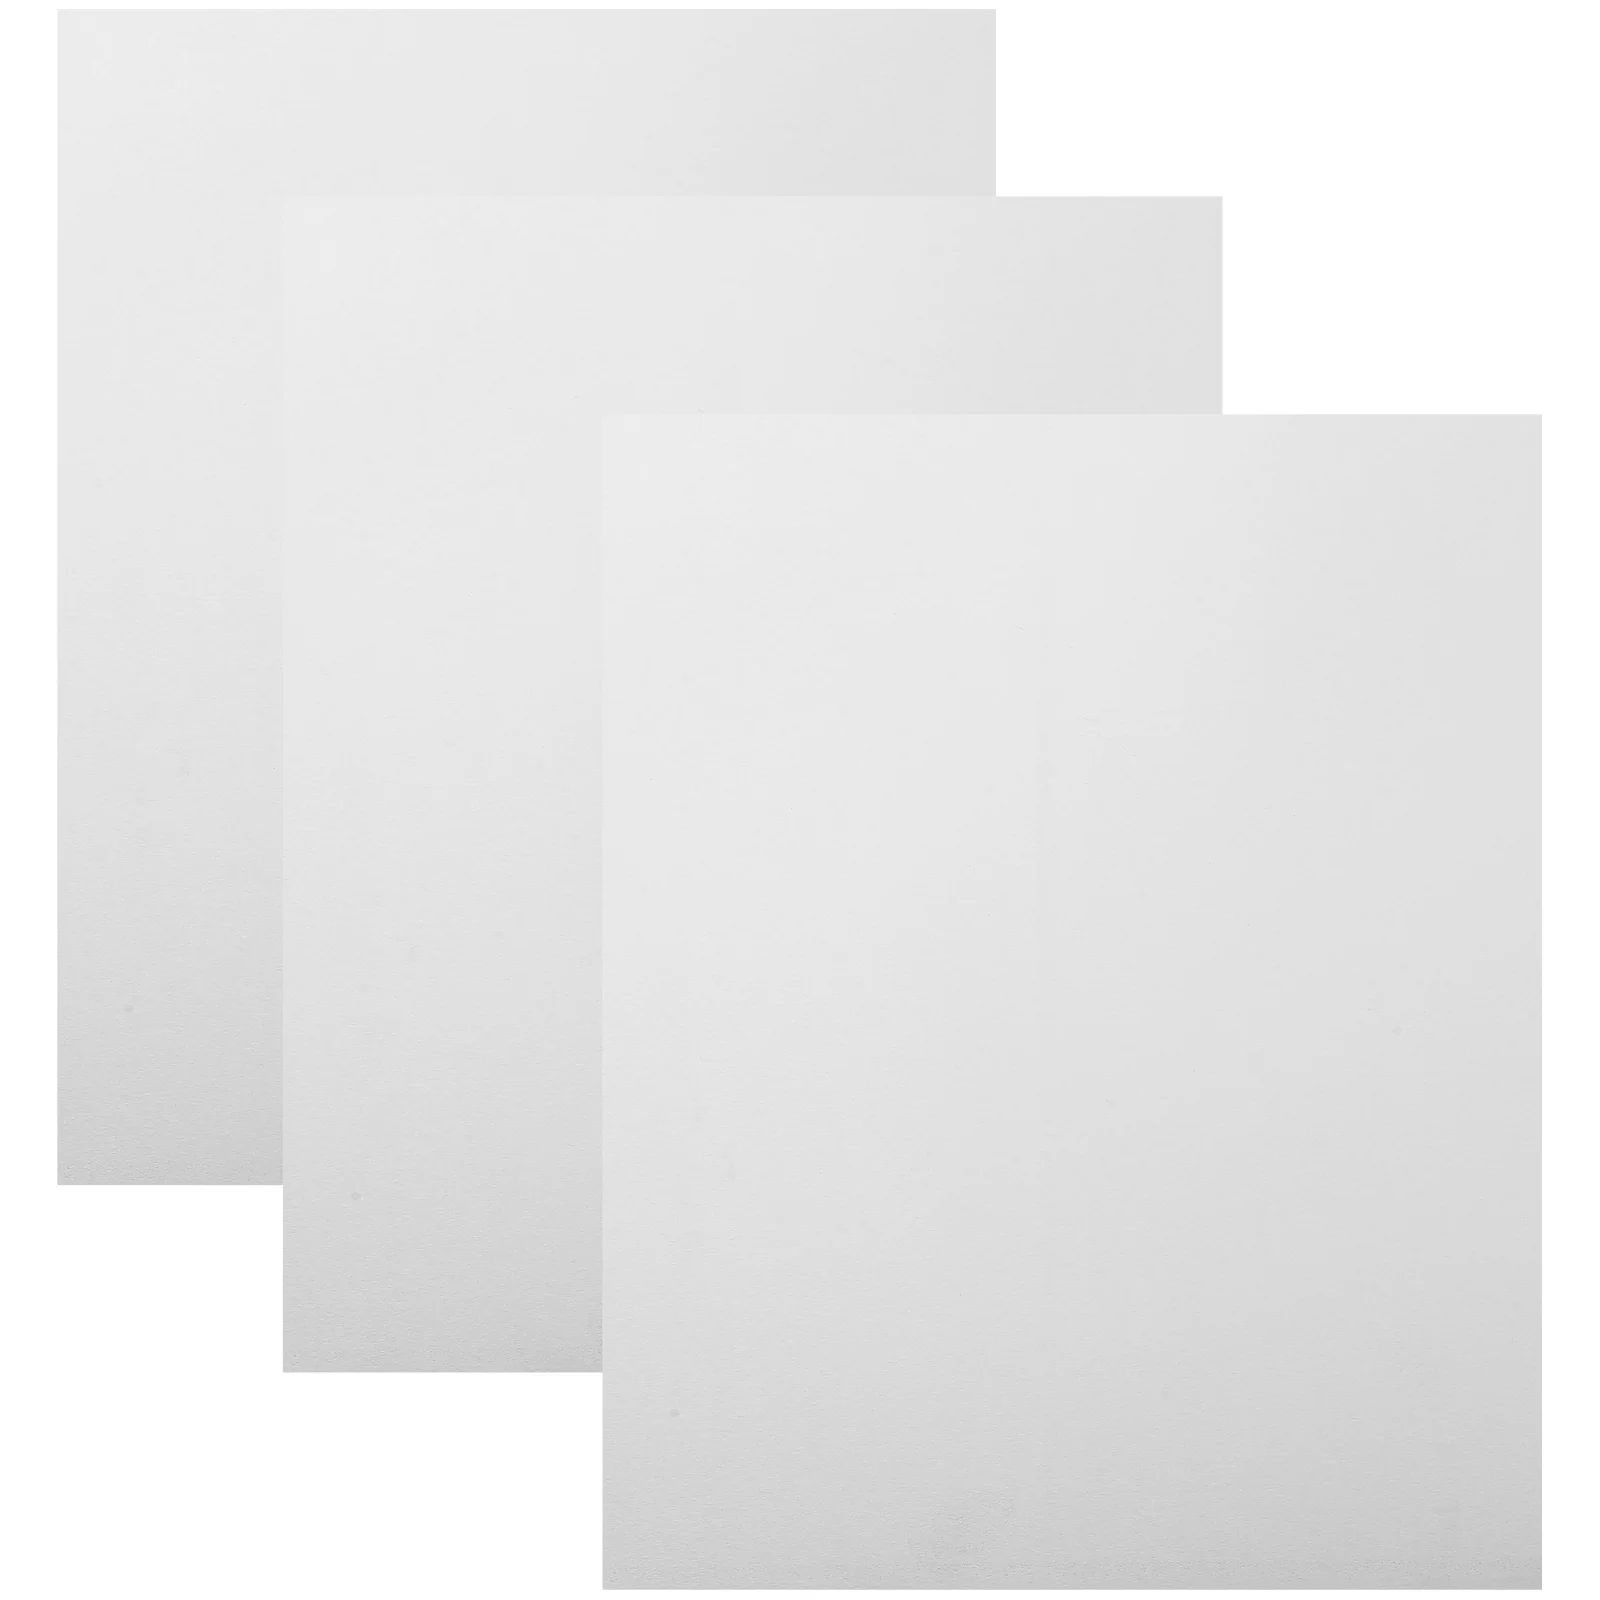 

3 шт сублимационный чистый алюминиевый лист имитация фото знак металлическая рамка доска заготовки пластина картины рамки